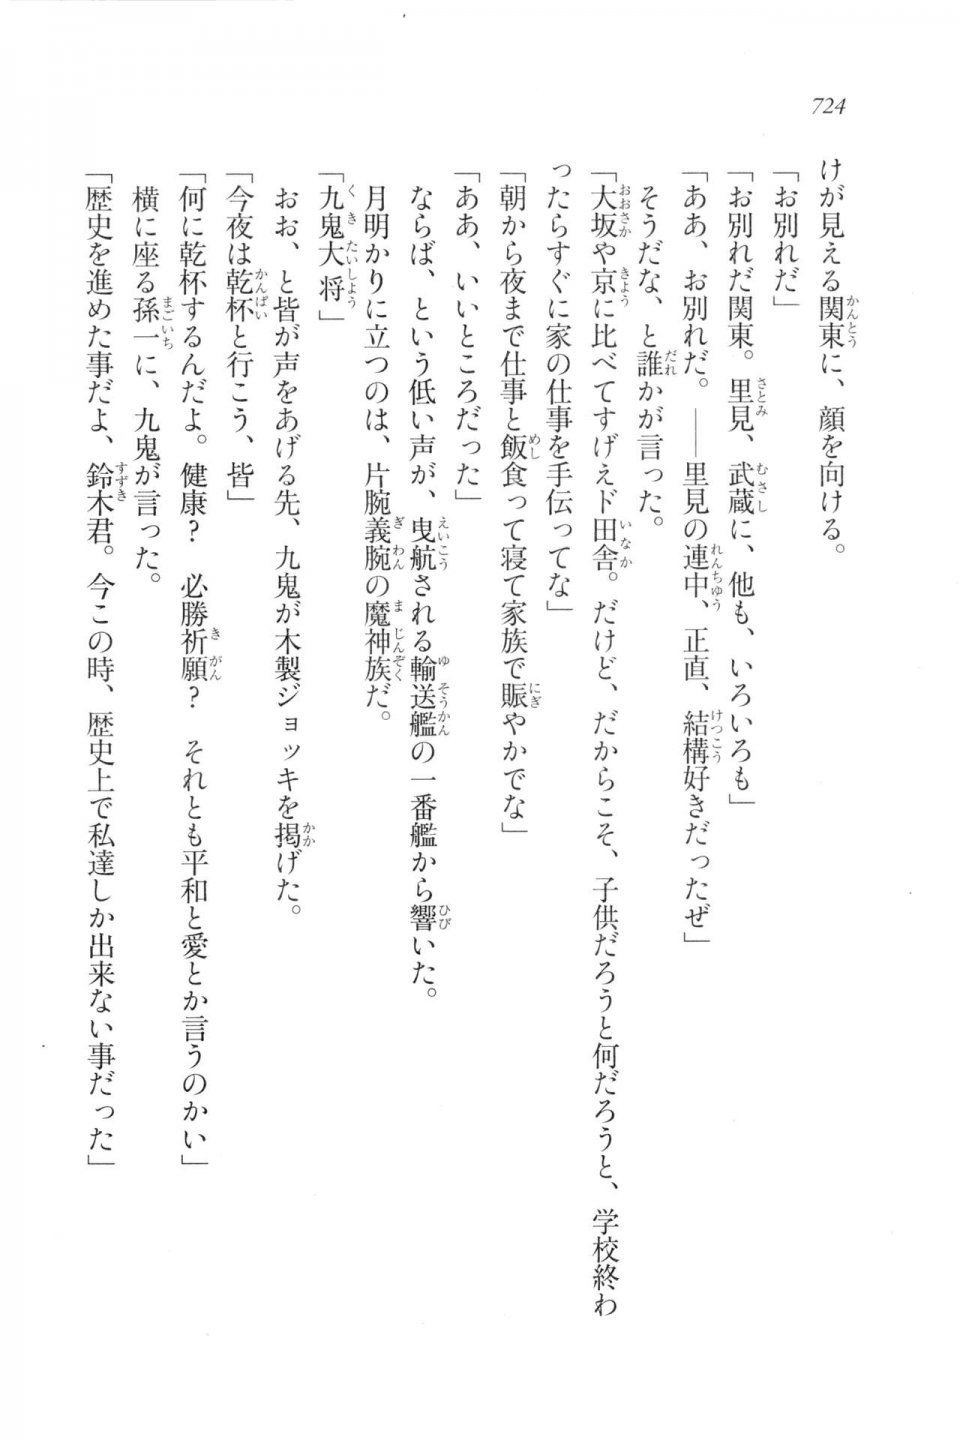 Kyoukai Senjou no Horizon LN Vol 20(8B) - Photo #724